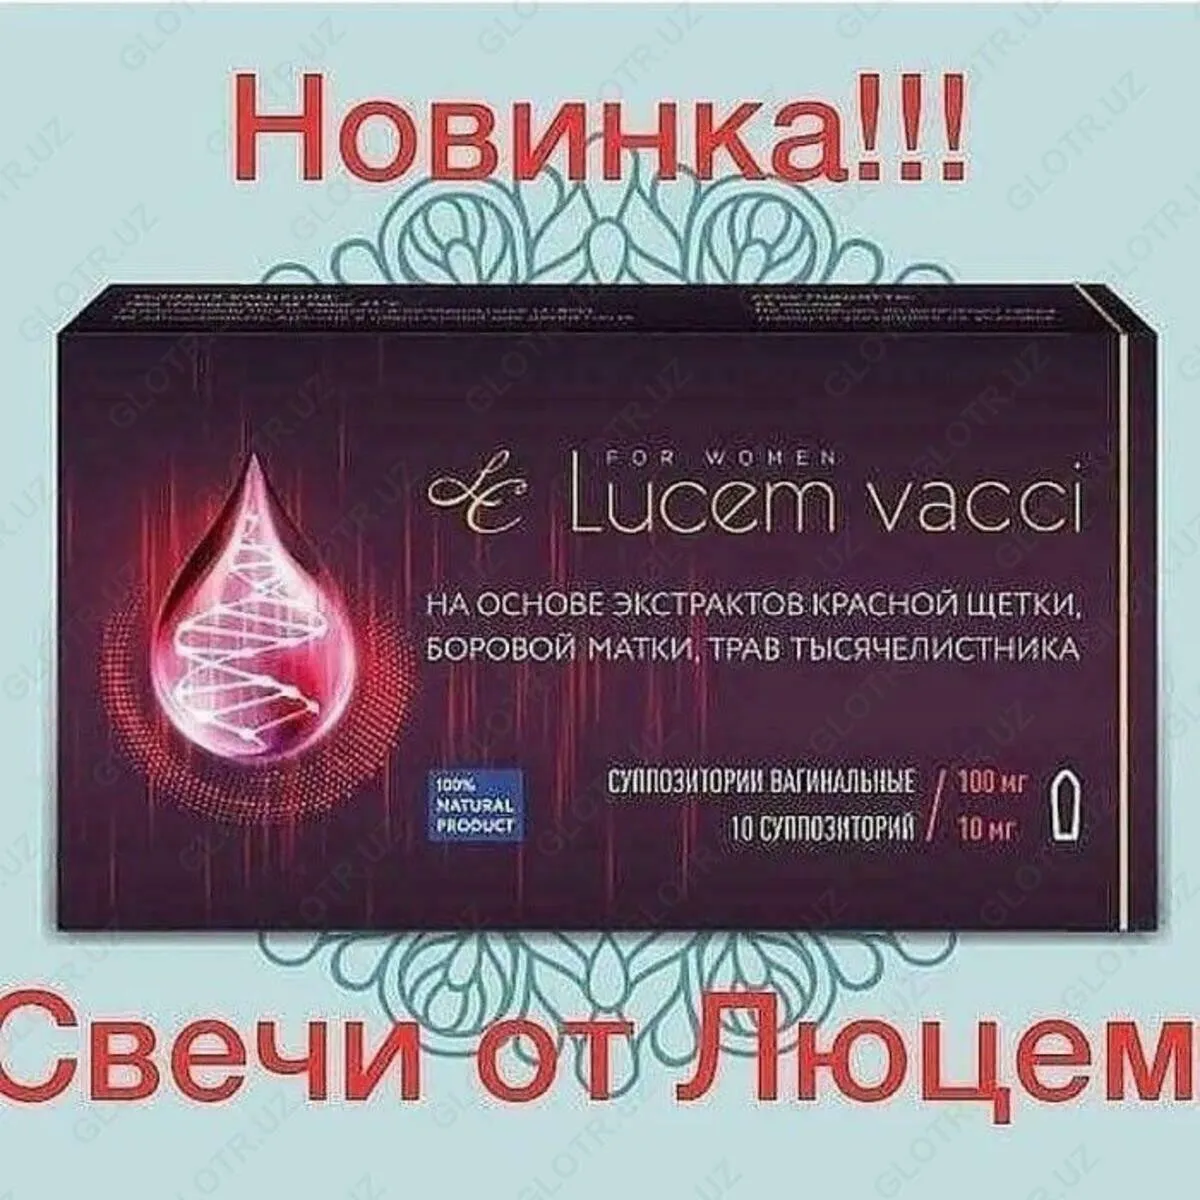 Lucem vacci shamlari#3